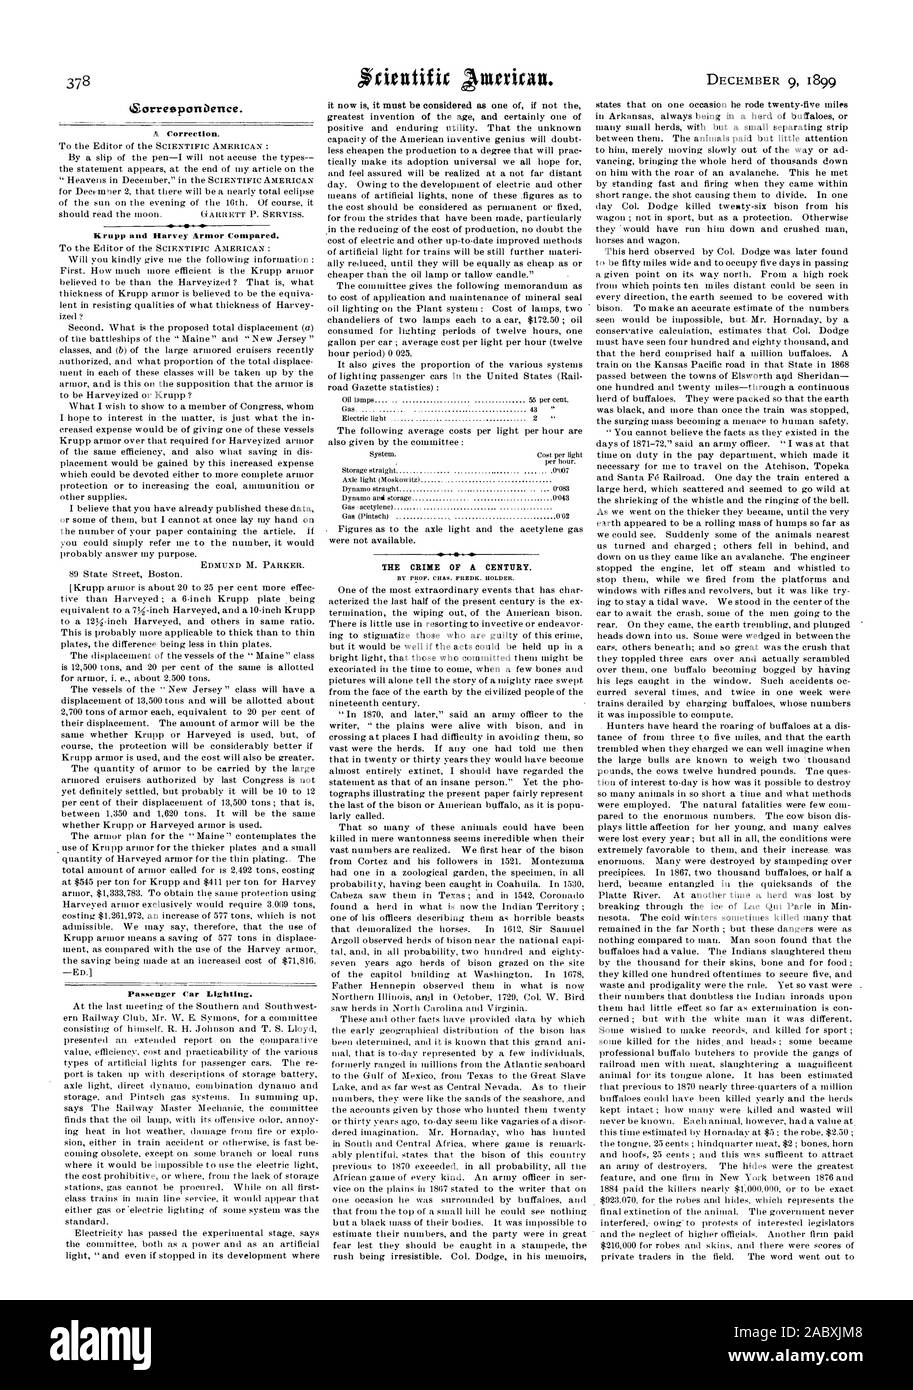 ZorresponDence. Une correction. Krupp et Harvey Armor comparés. EDMUND M. PARKER. L'éclairage des voitures voyageurs. Le CRIME D'UN SIÈCLE., Scientific American, 1899-12-09 Banque D'Images